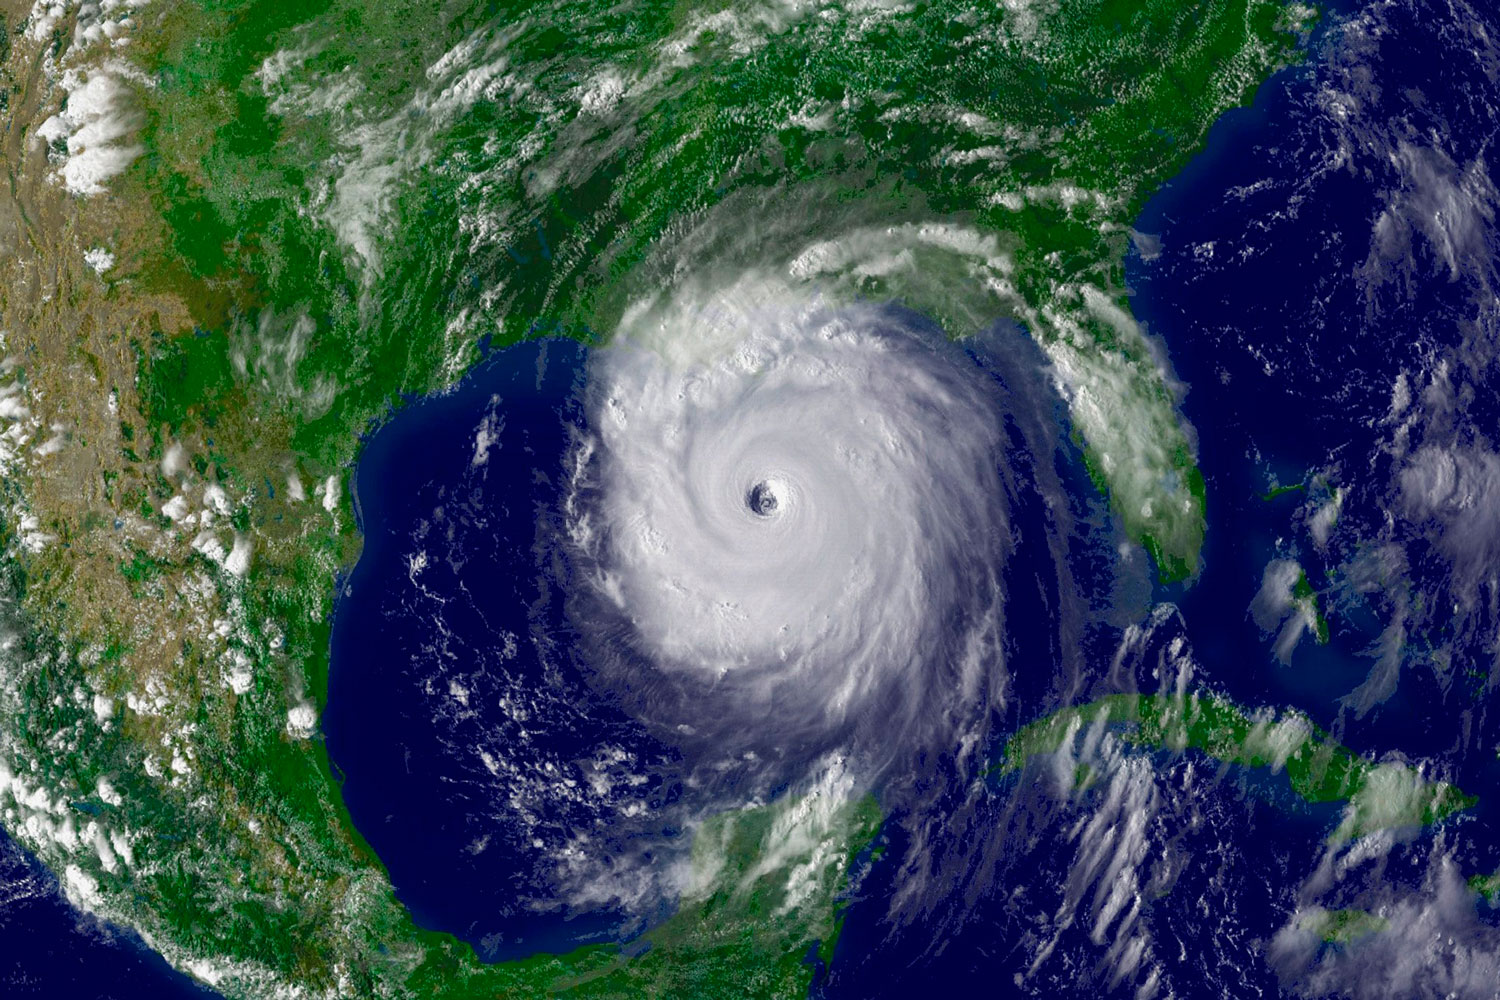 Los huracanes con nombres femeninos son más letales, pero se perciben como menos amenazantes